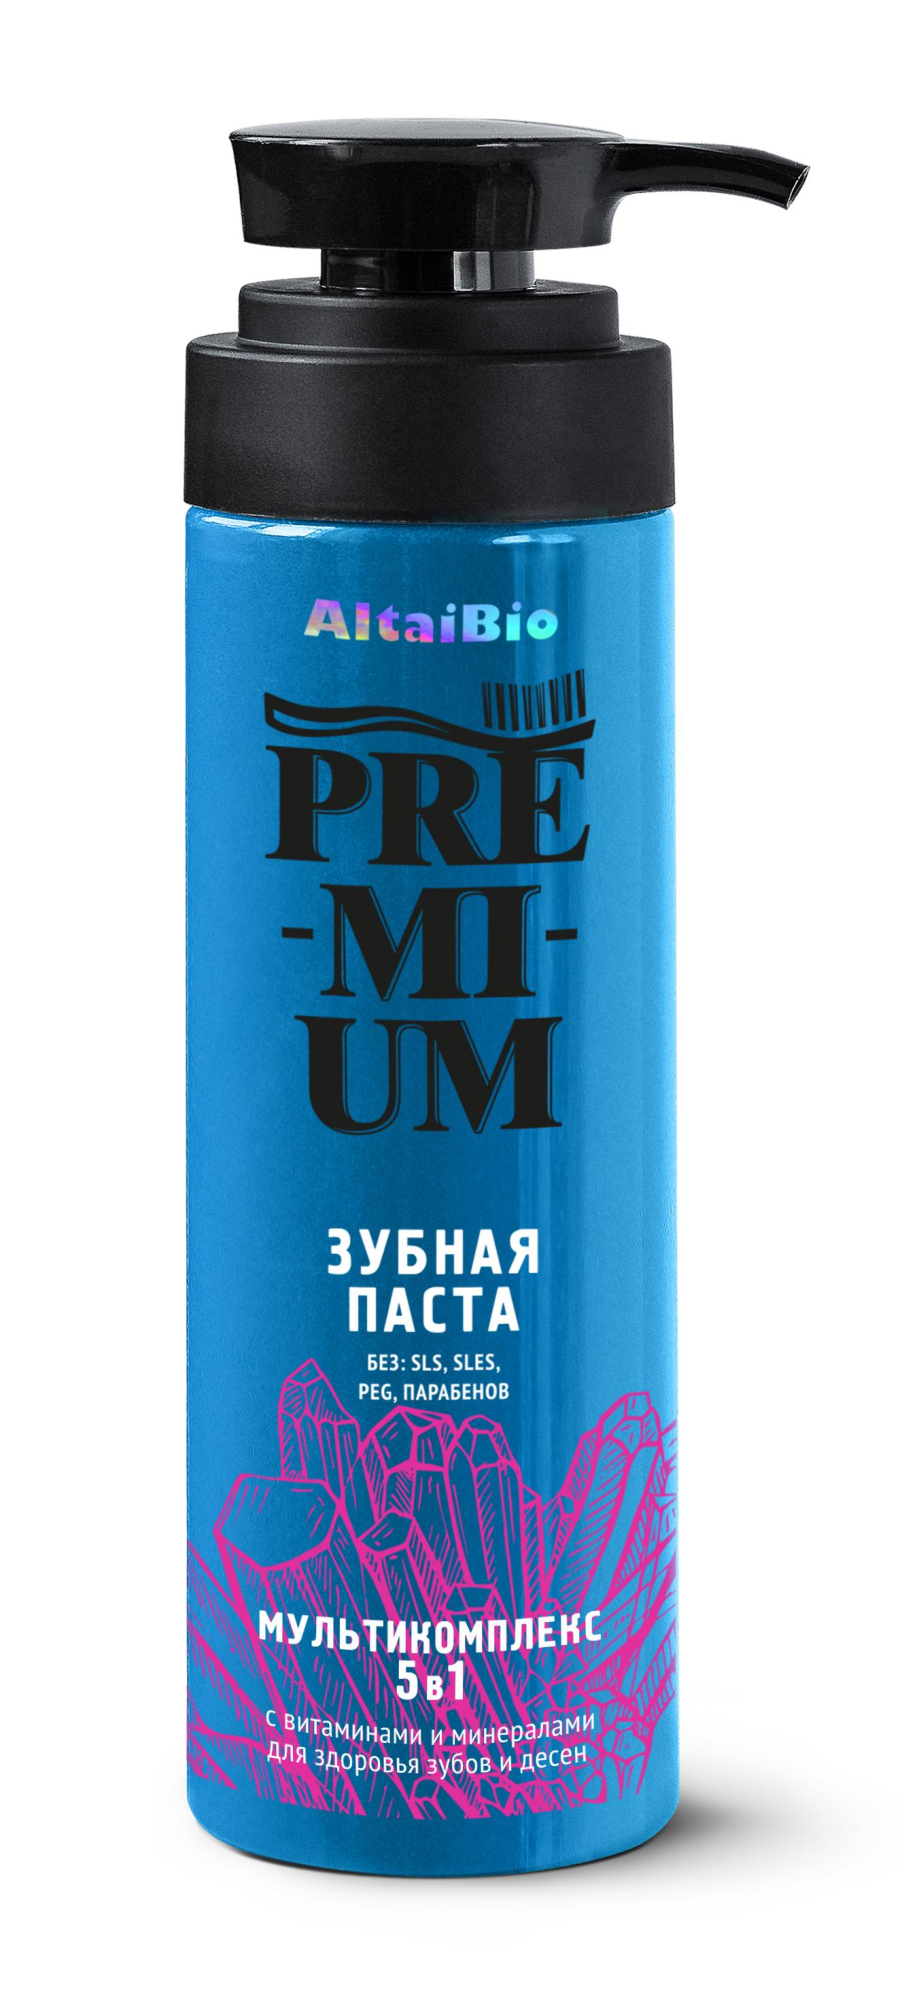 Зубная паста мультикомплекс 5 в 1 с витаминами и минералами AltaiBio Premium , 250 г купить